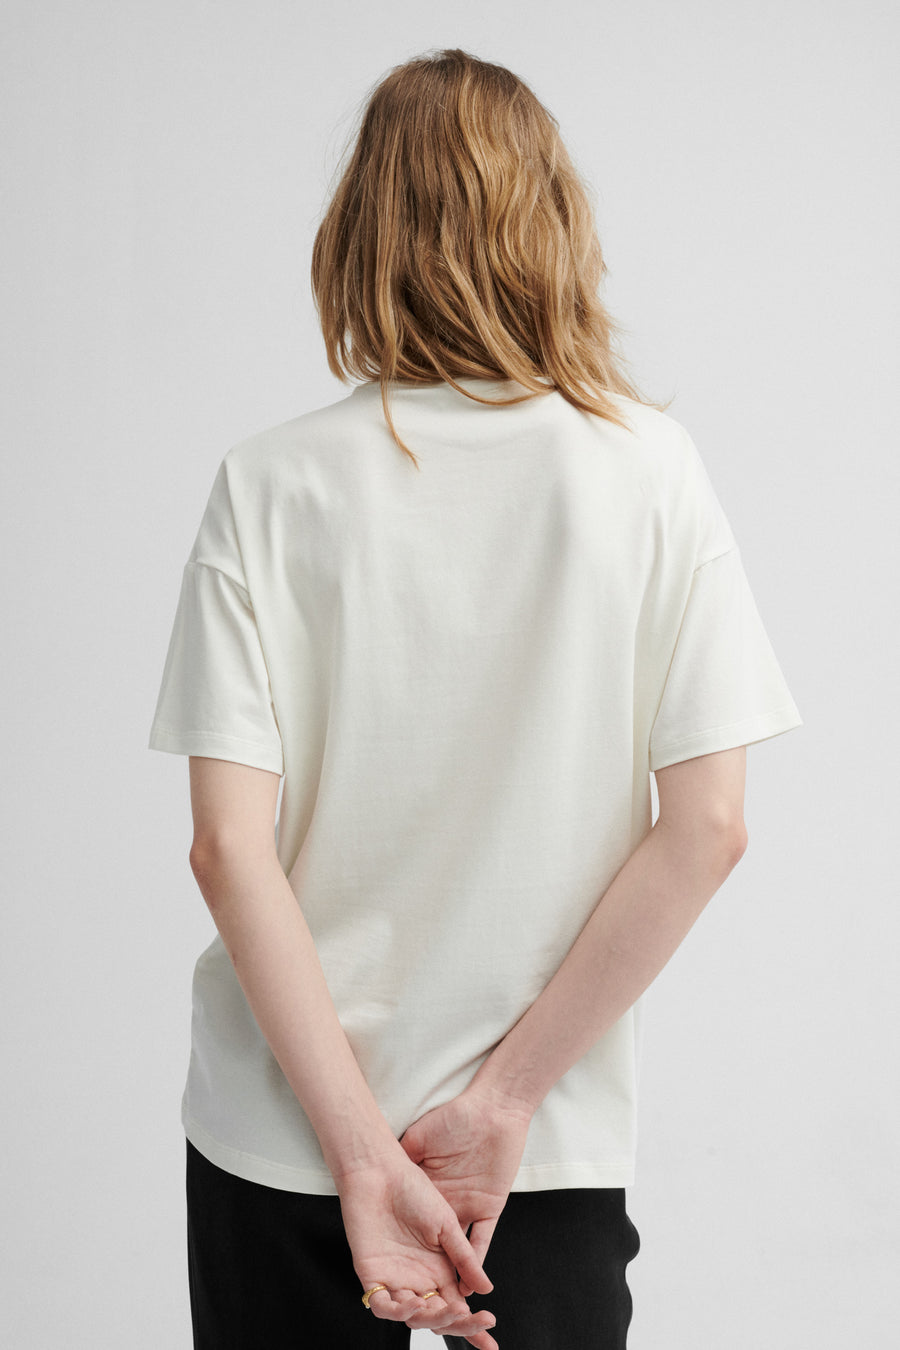 T-shirt z bawełny organicznej / 13 / 27 / cream white*spodnie-z-tencelu-05-17-onyx-black* ?Modelka ma 179 cm wzrostu i prezentuje rozmiar XS?